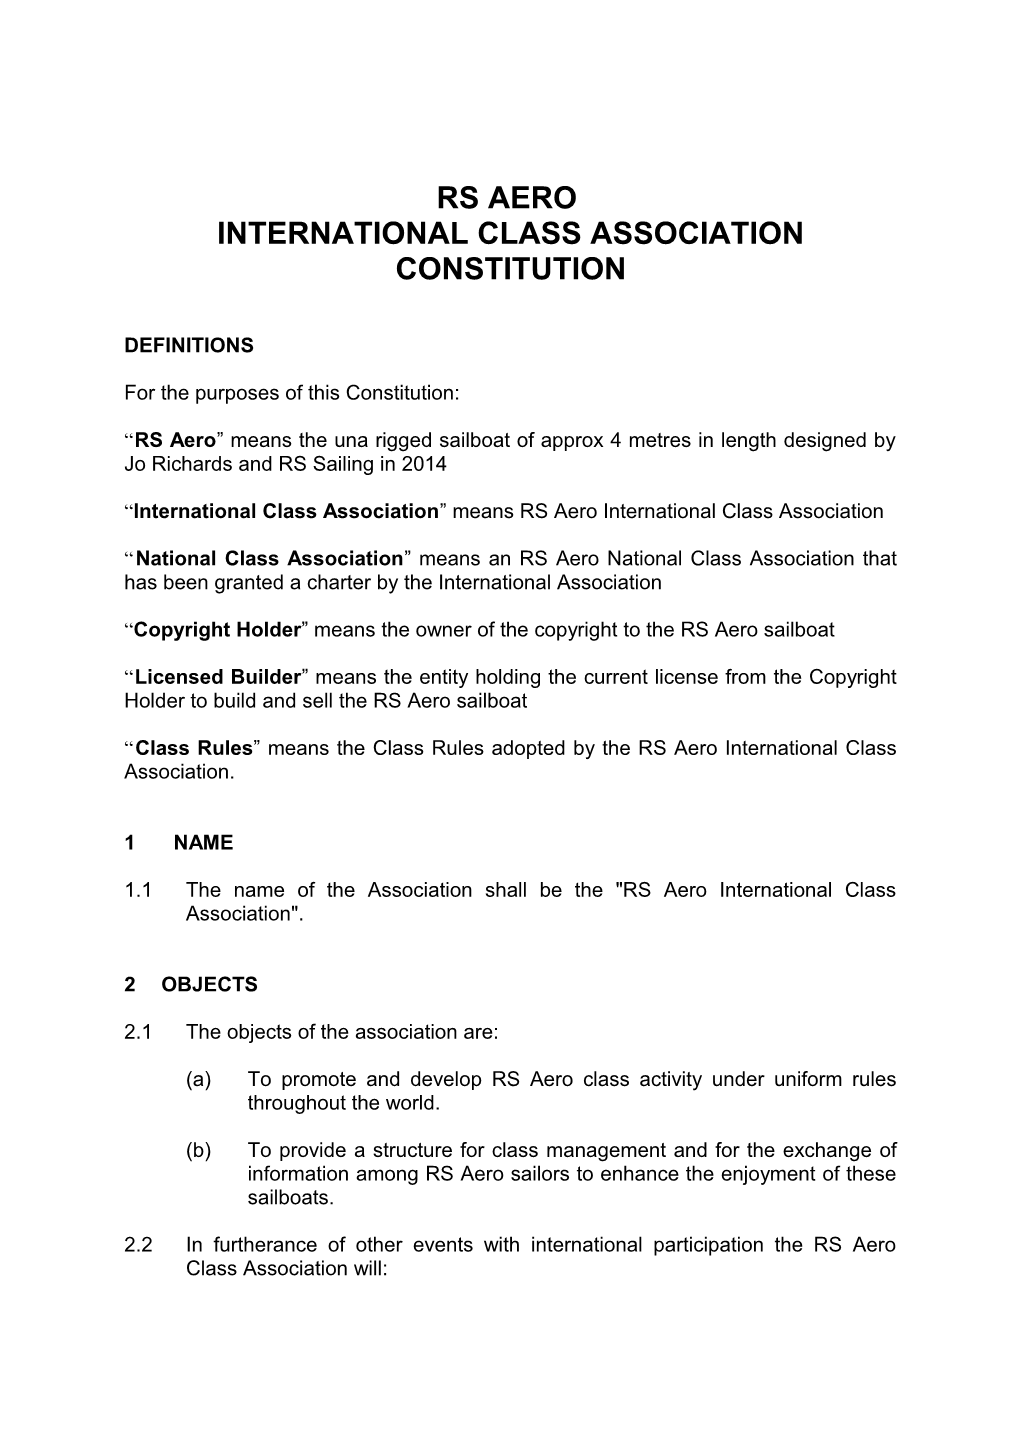 International Class Association Constitution